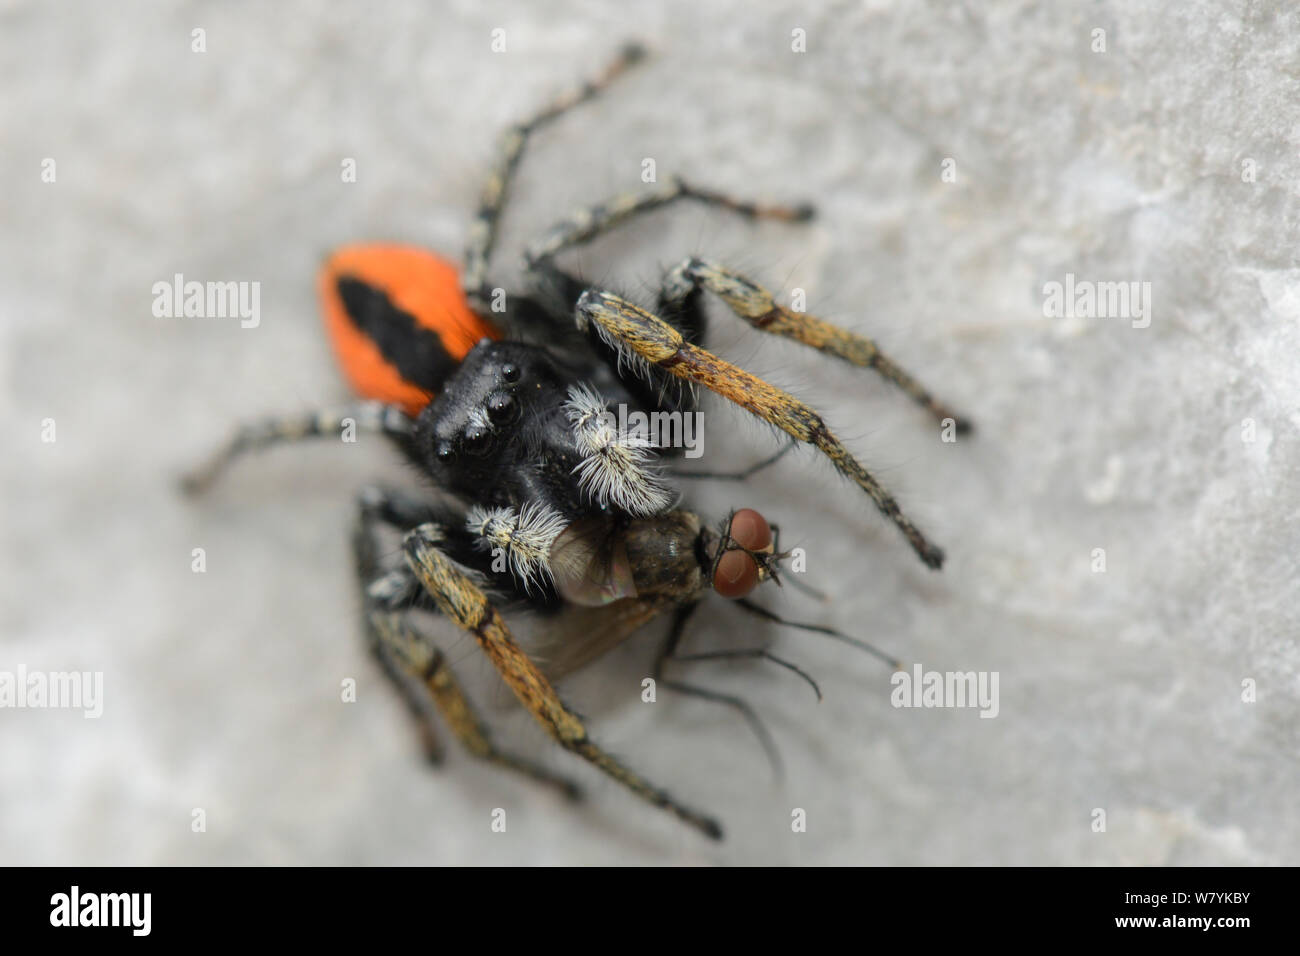 Jumping spider (Phylaeus chrysops) con mosca presa sobre rocas calizas, Parque de Sutjeska, Bosnia y Herzegovina, en julio. Foto de stock